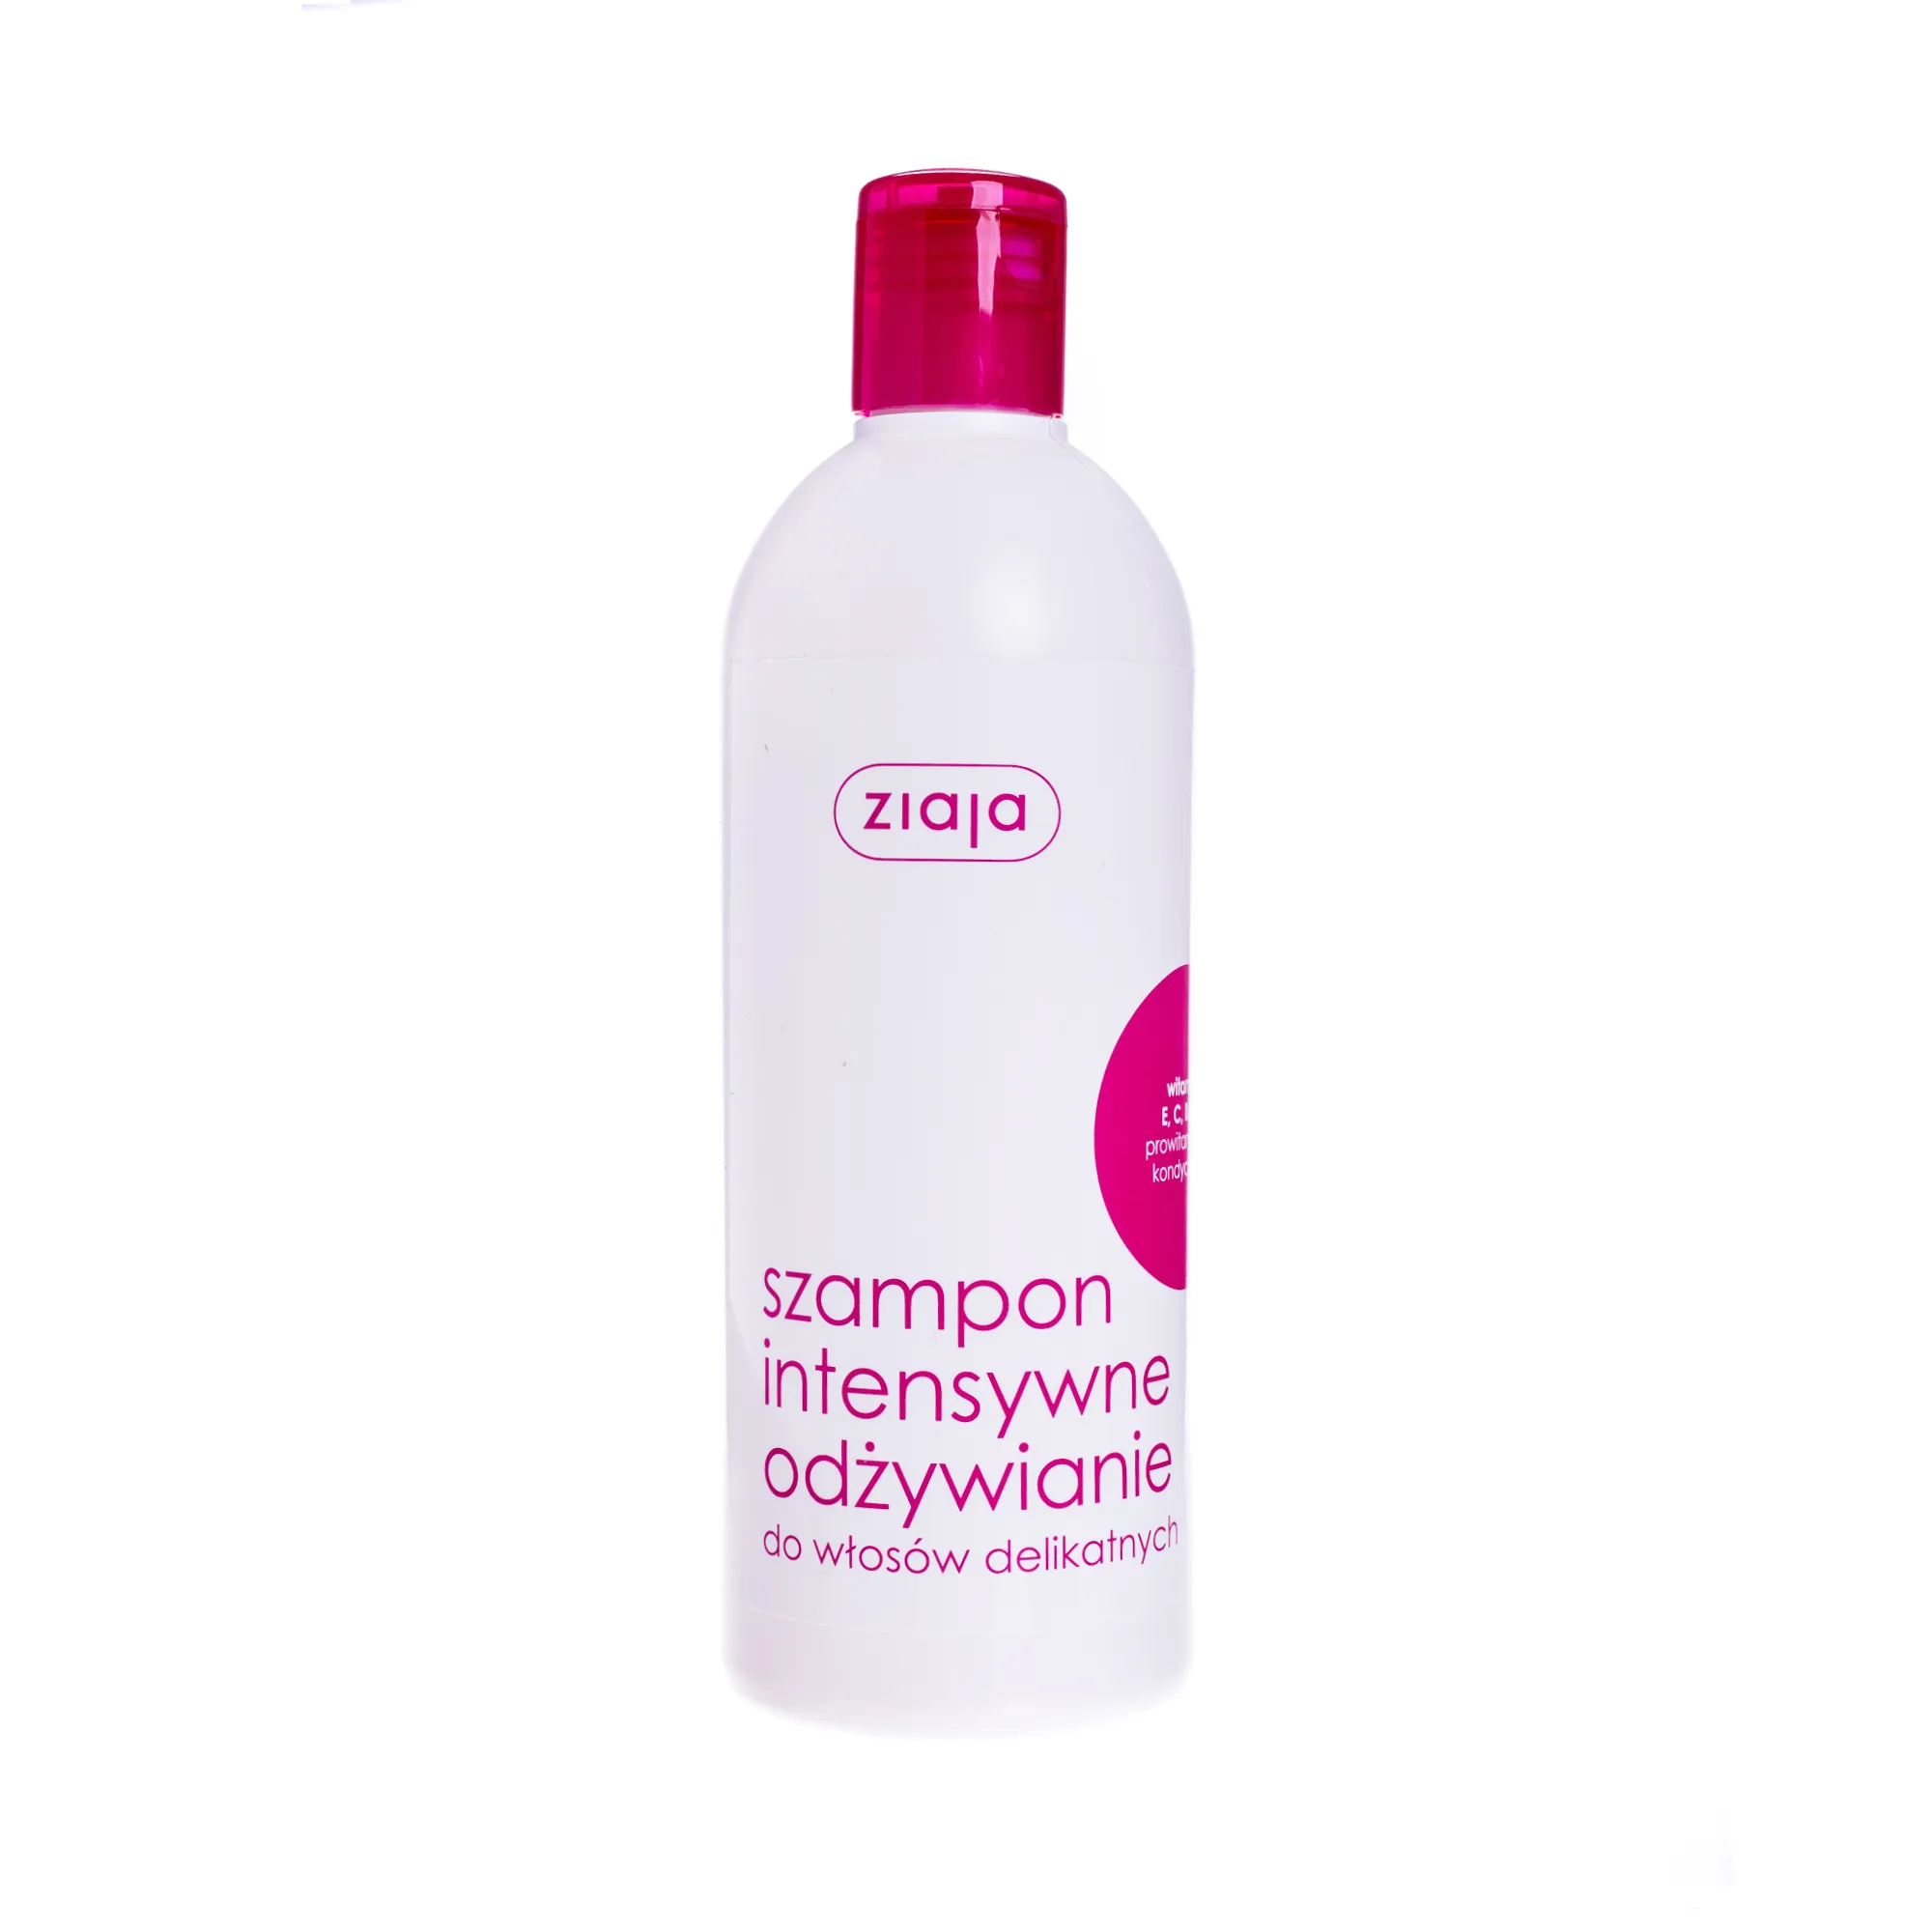 Ziaja Intensywne Odżywianie, szampon do włosów delikatnych, 400 ml